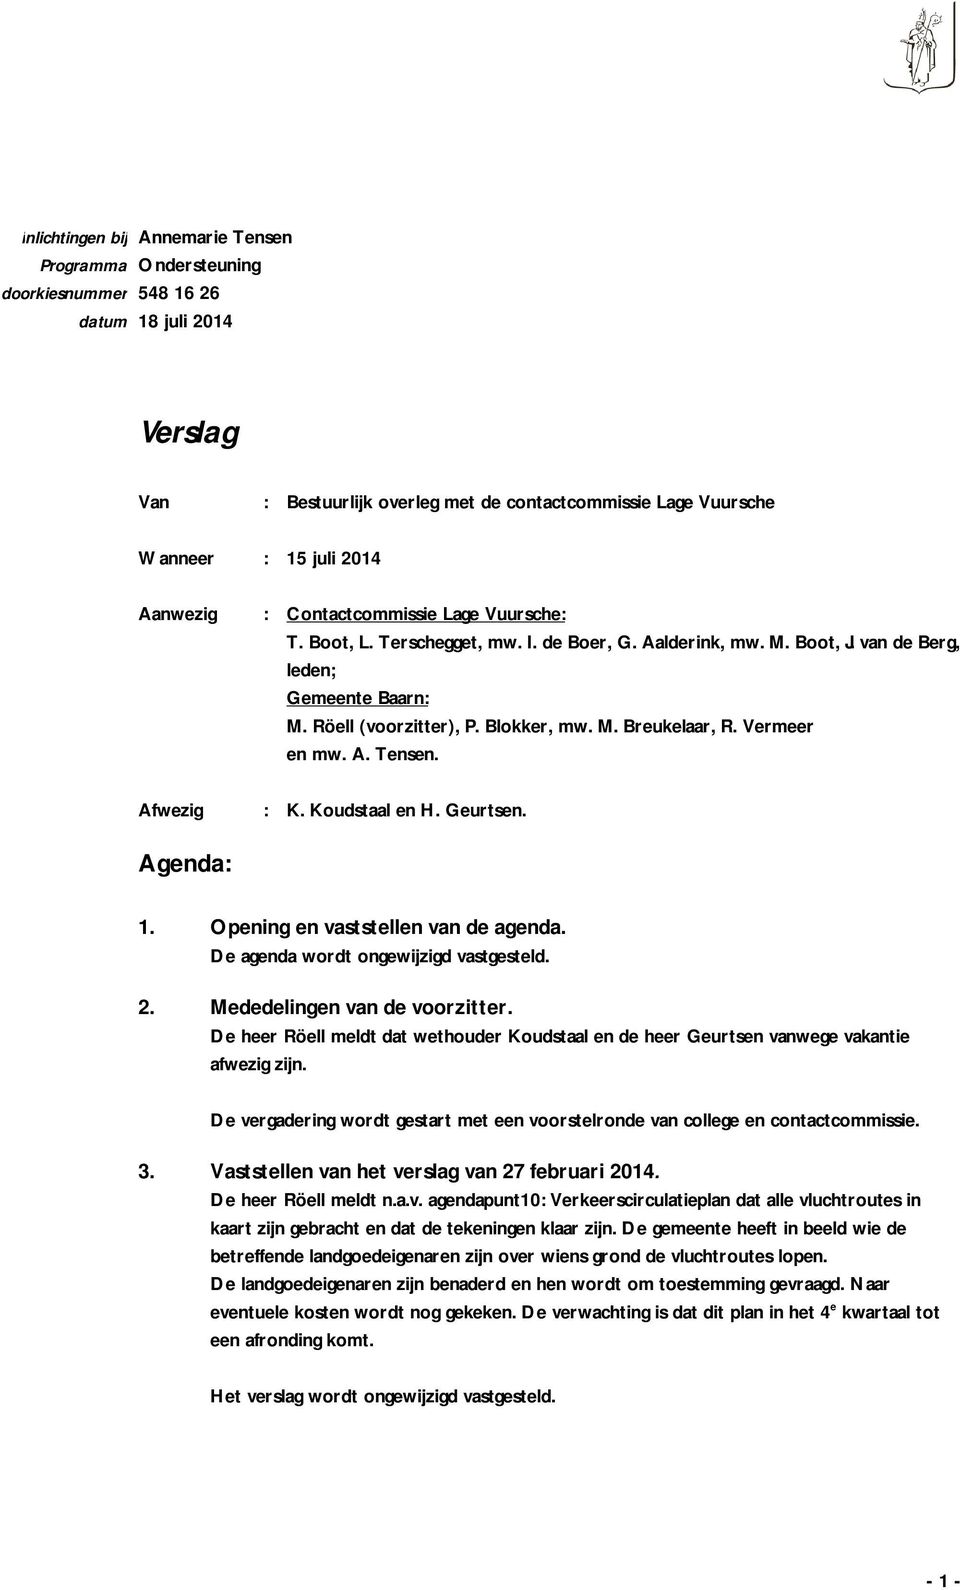 Vermeer en mw. A. Tensen. : K. Koudstaal en H. Geurtsen. Agenda: 1. Opening en vaststellen van de agenda. De agenda wordt ongewijzigd vastgesteld. 2. Mededelingen van de voorzitter.